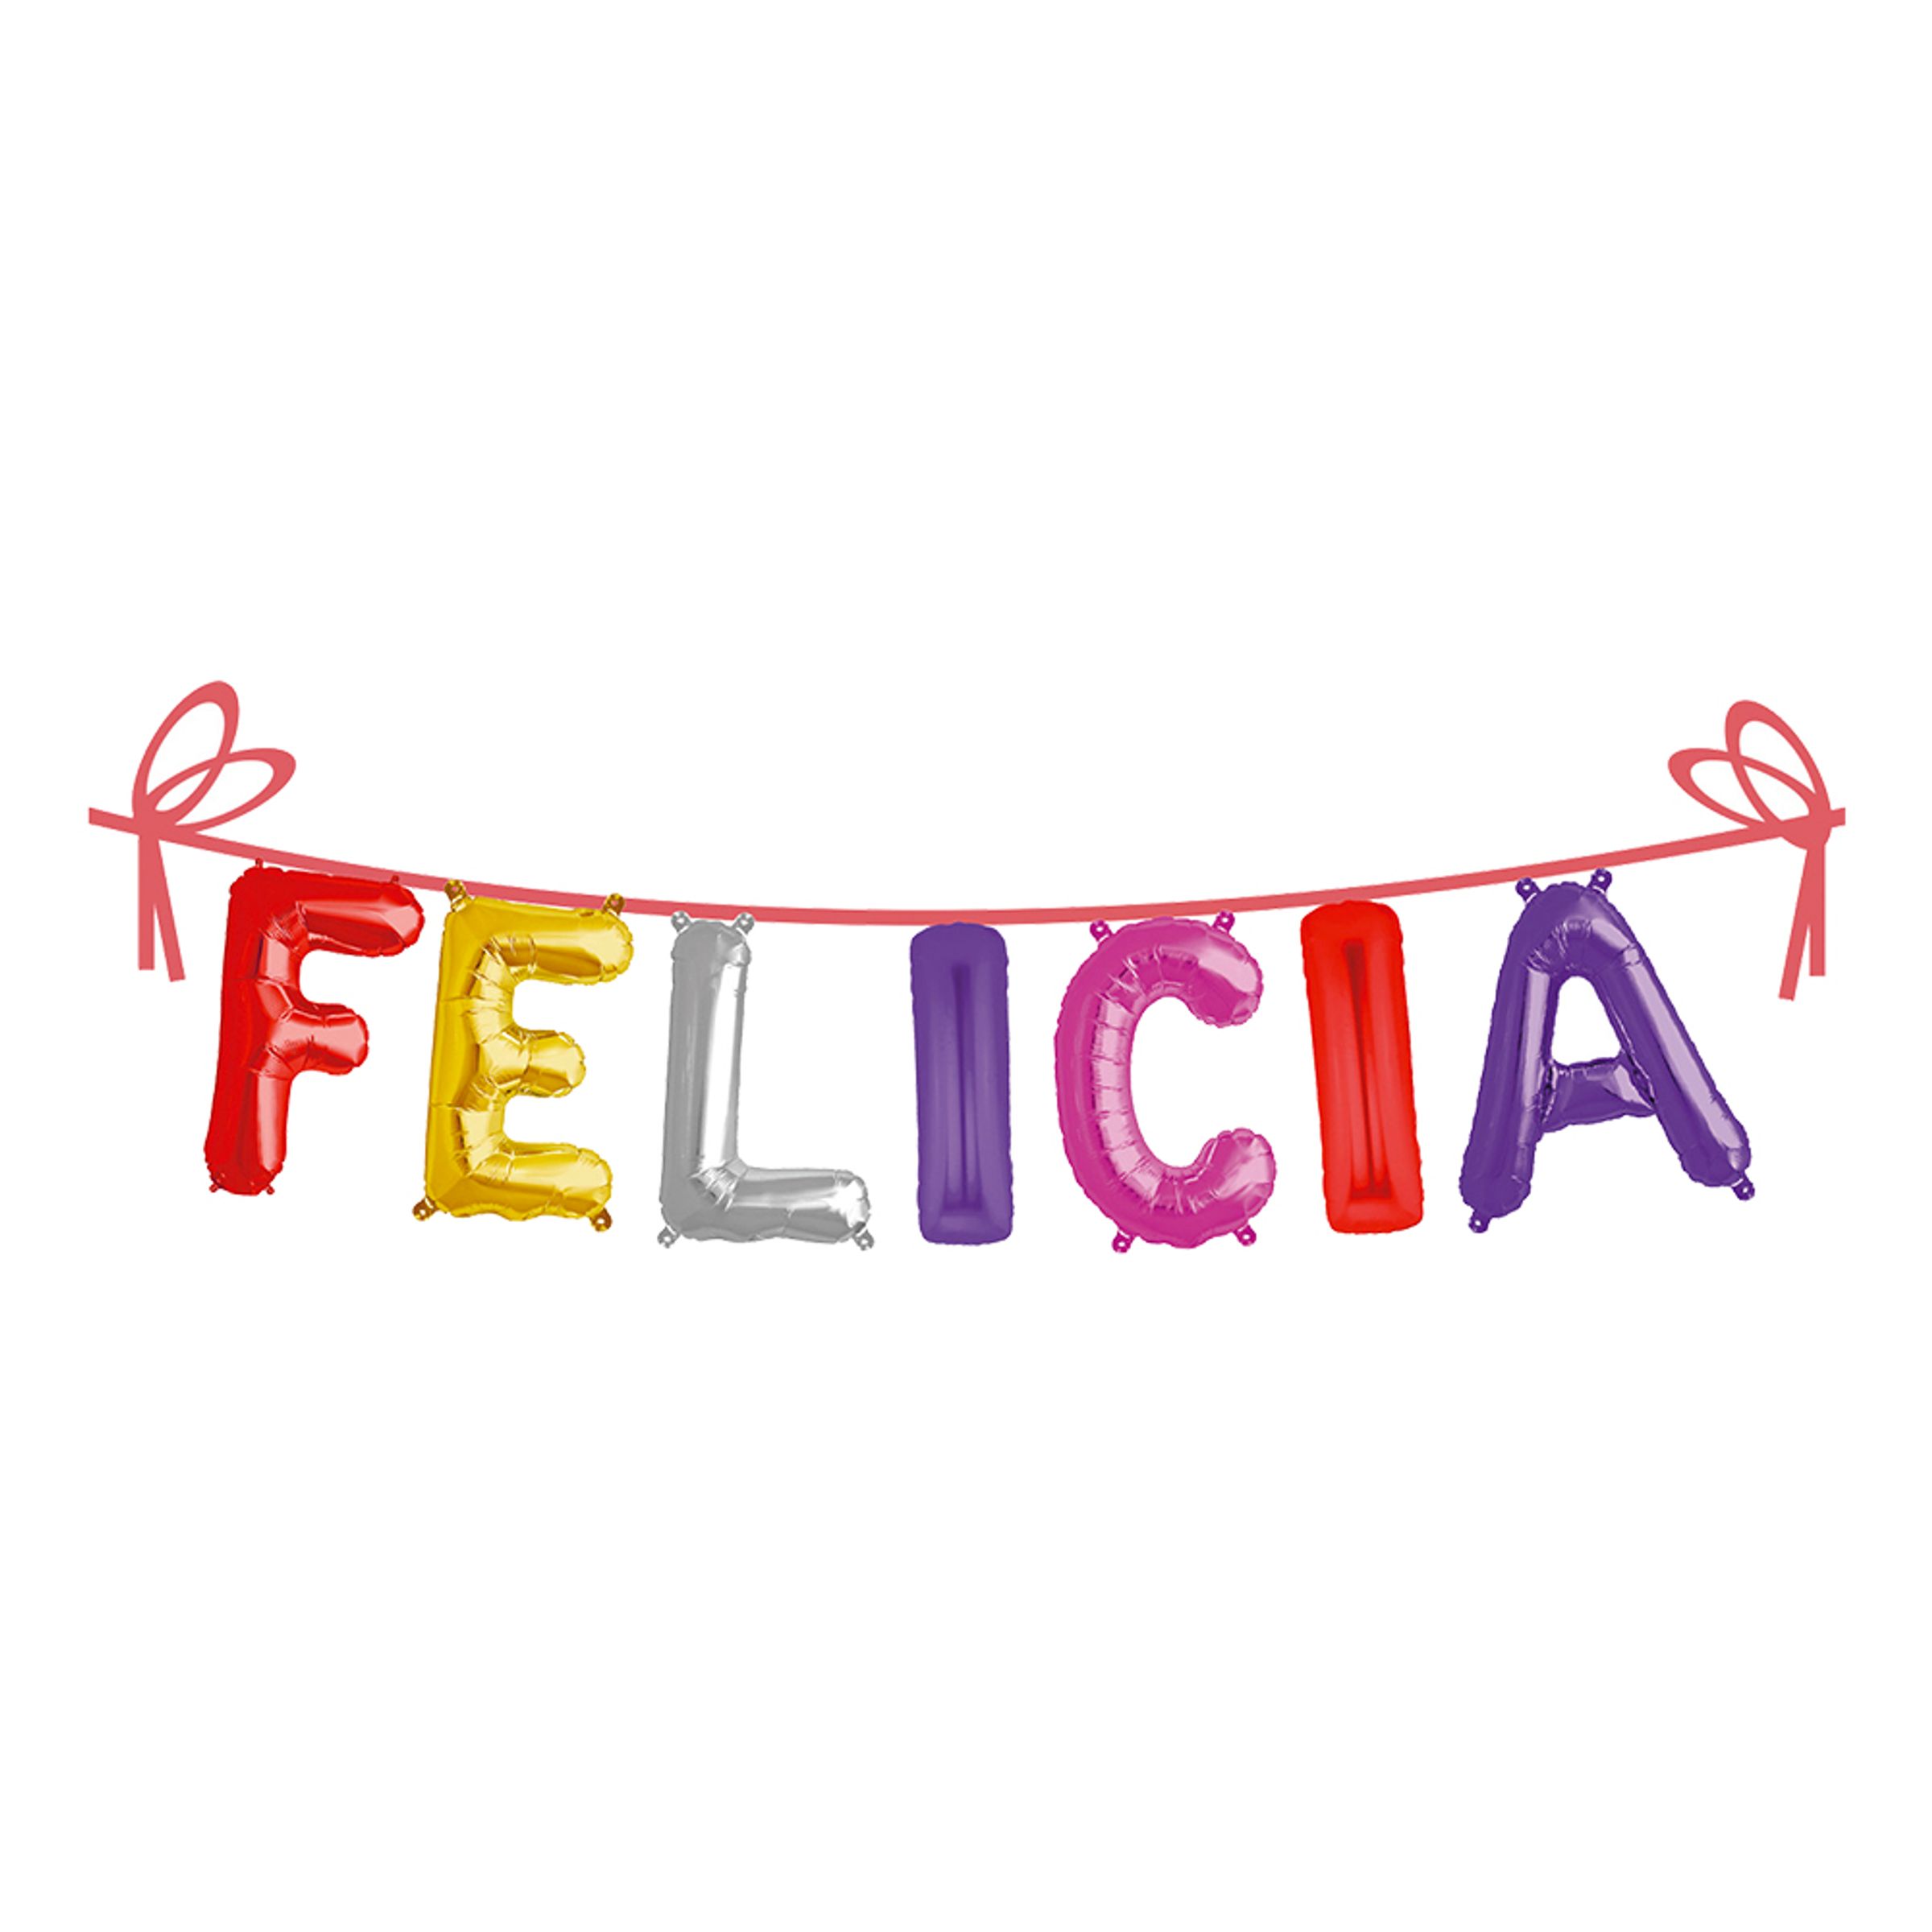 Ballonggirlang Folie Namn - Felicia